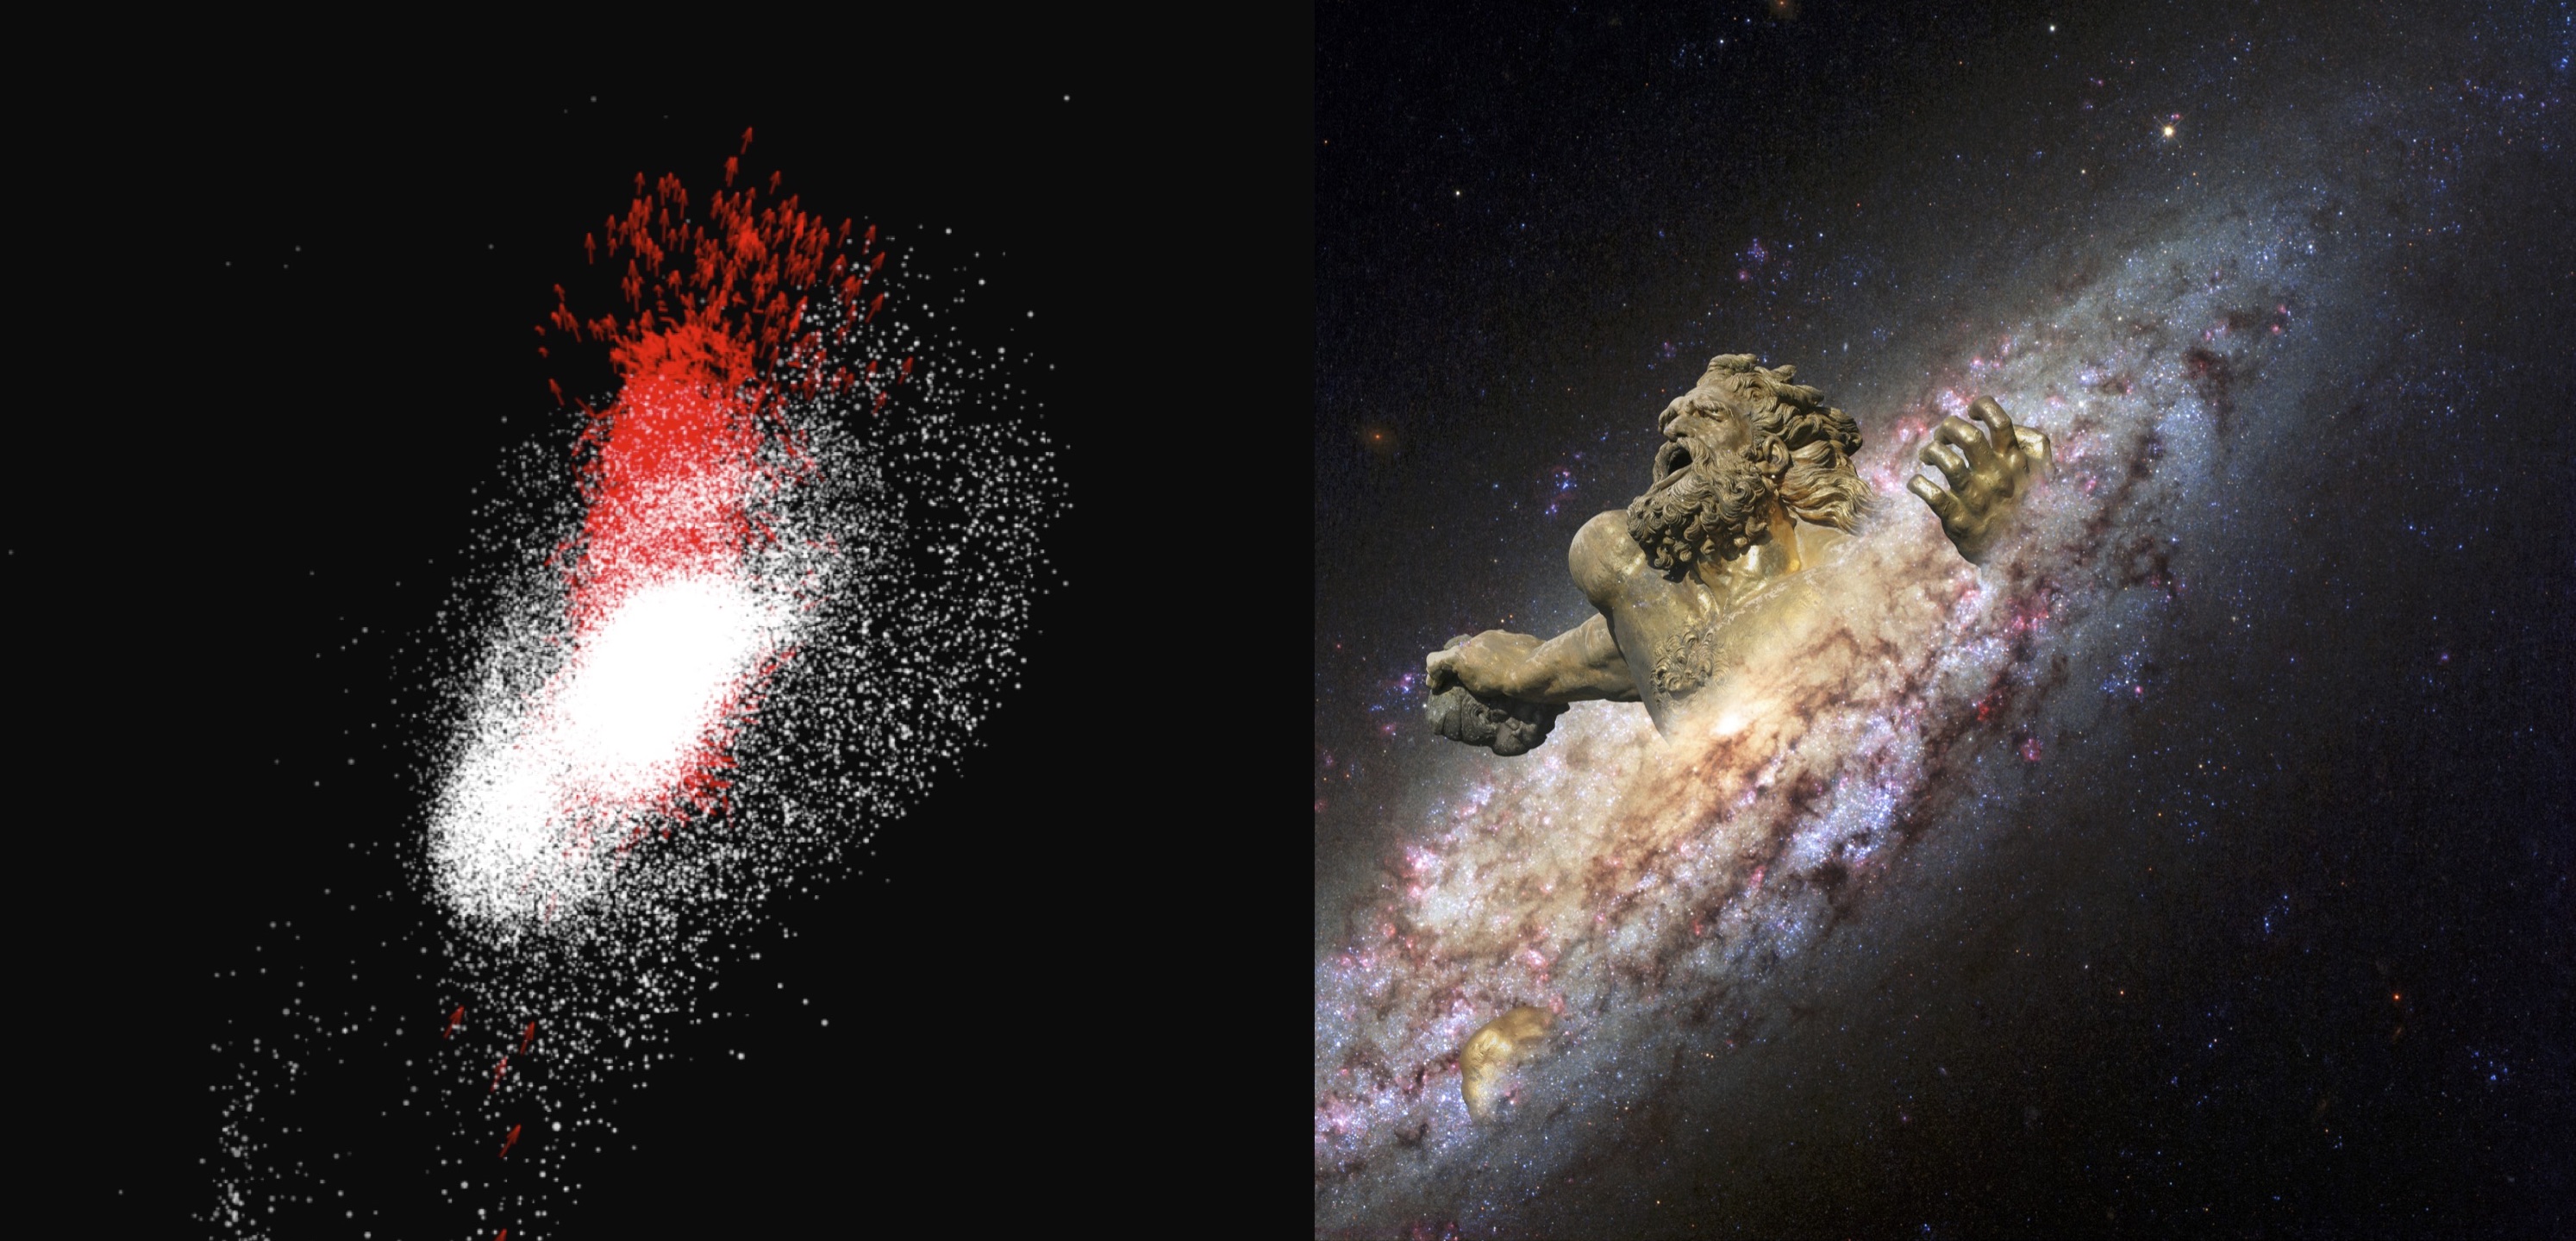 Nou weten we meer over de ‘Gaia Worst’, de grote botsing die ons Melkwegstelsel heeft veranderd